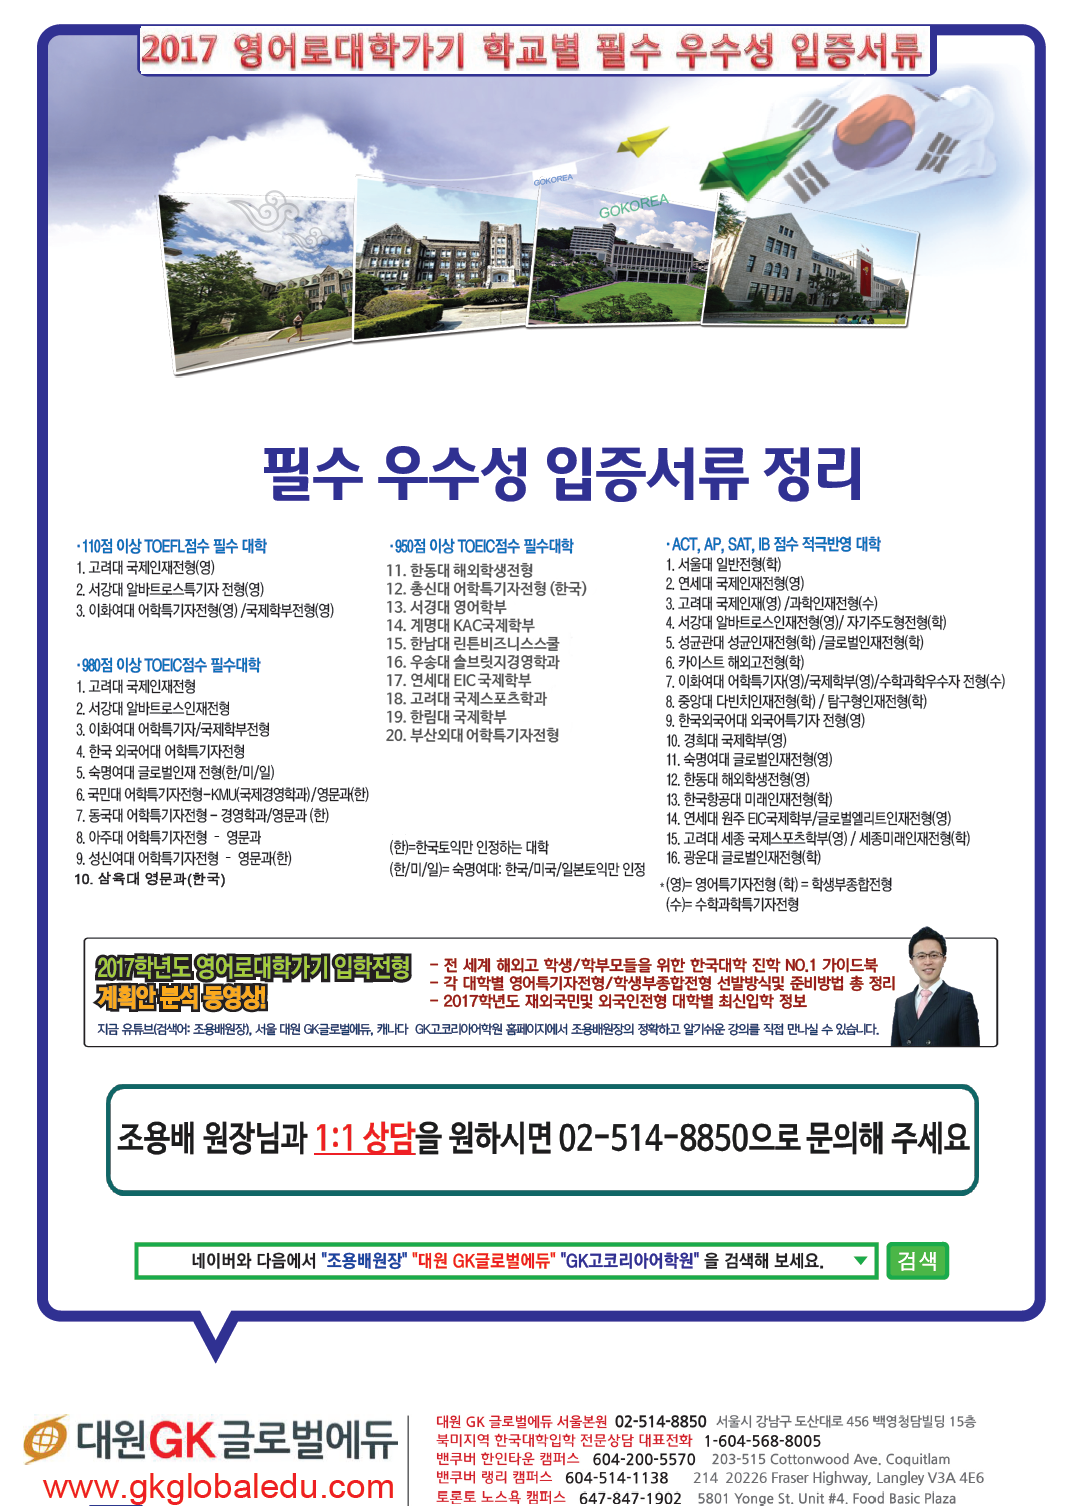 2017필수우수성입증서류정리(최종).png